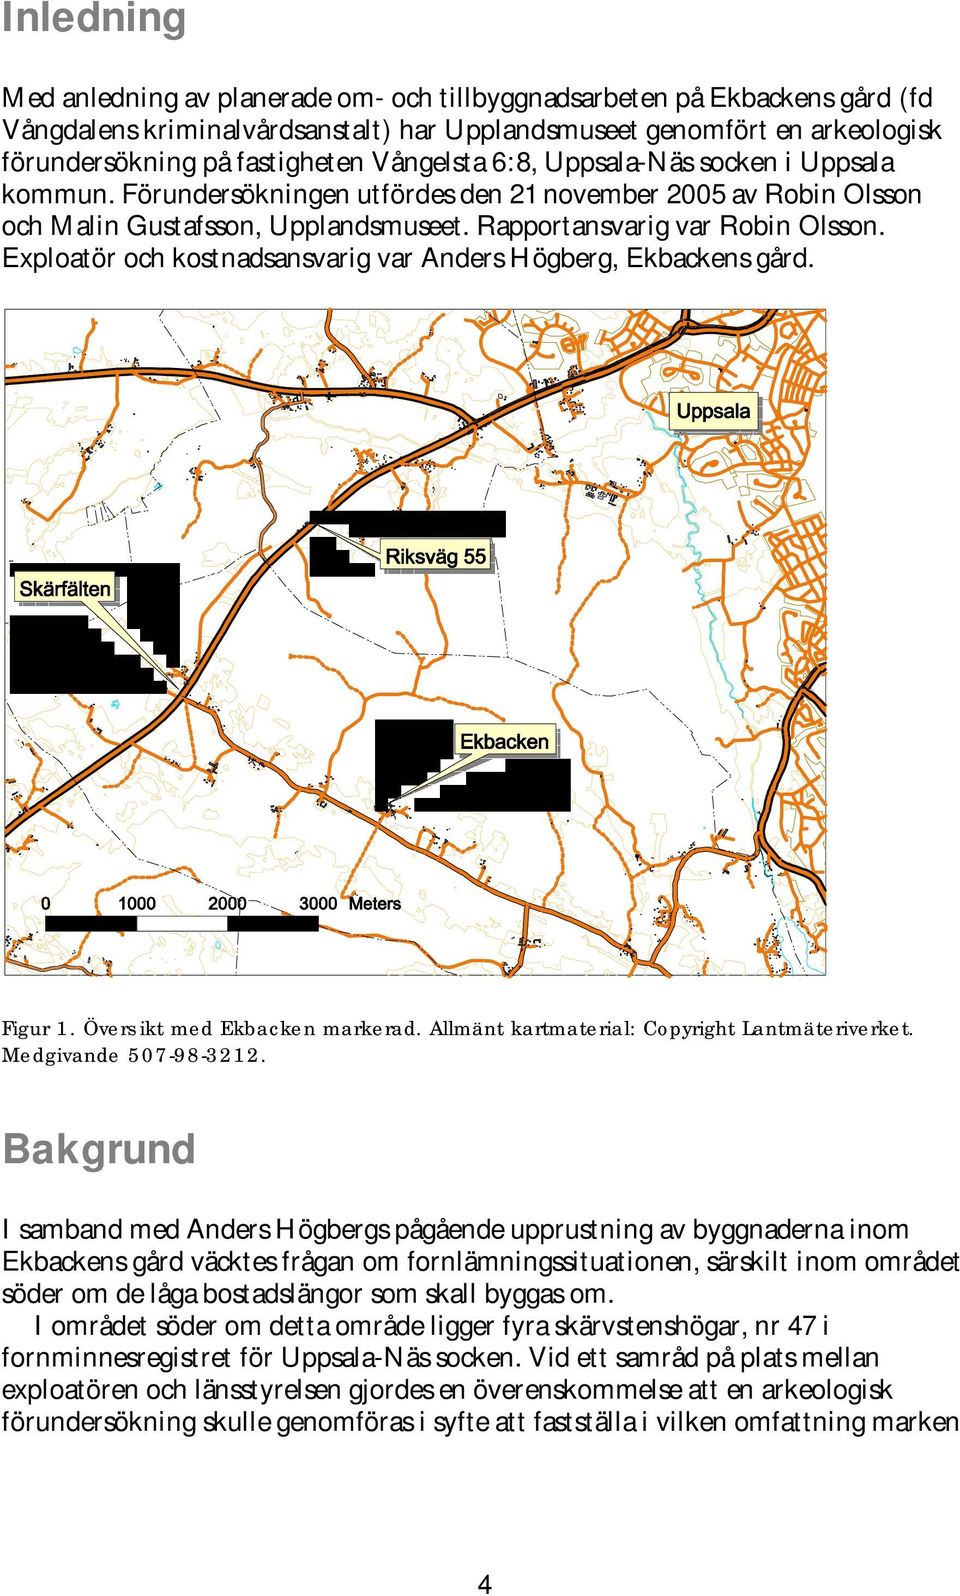 Exploatör och kostnadsansvarig var Anders Högberg, Ekbackens gård. Figur 1. Översikt med Ekbacken markerad. Allmänt kartmaterial: Copyright Lantmäteriverket. Medgivande 507-98-3212.